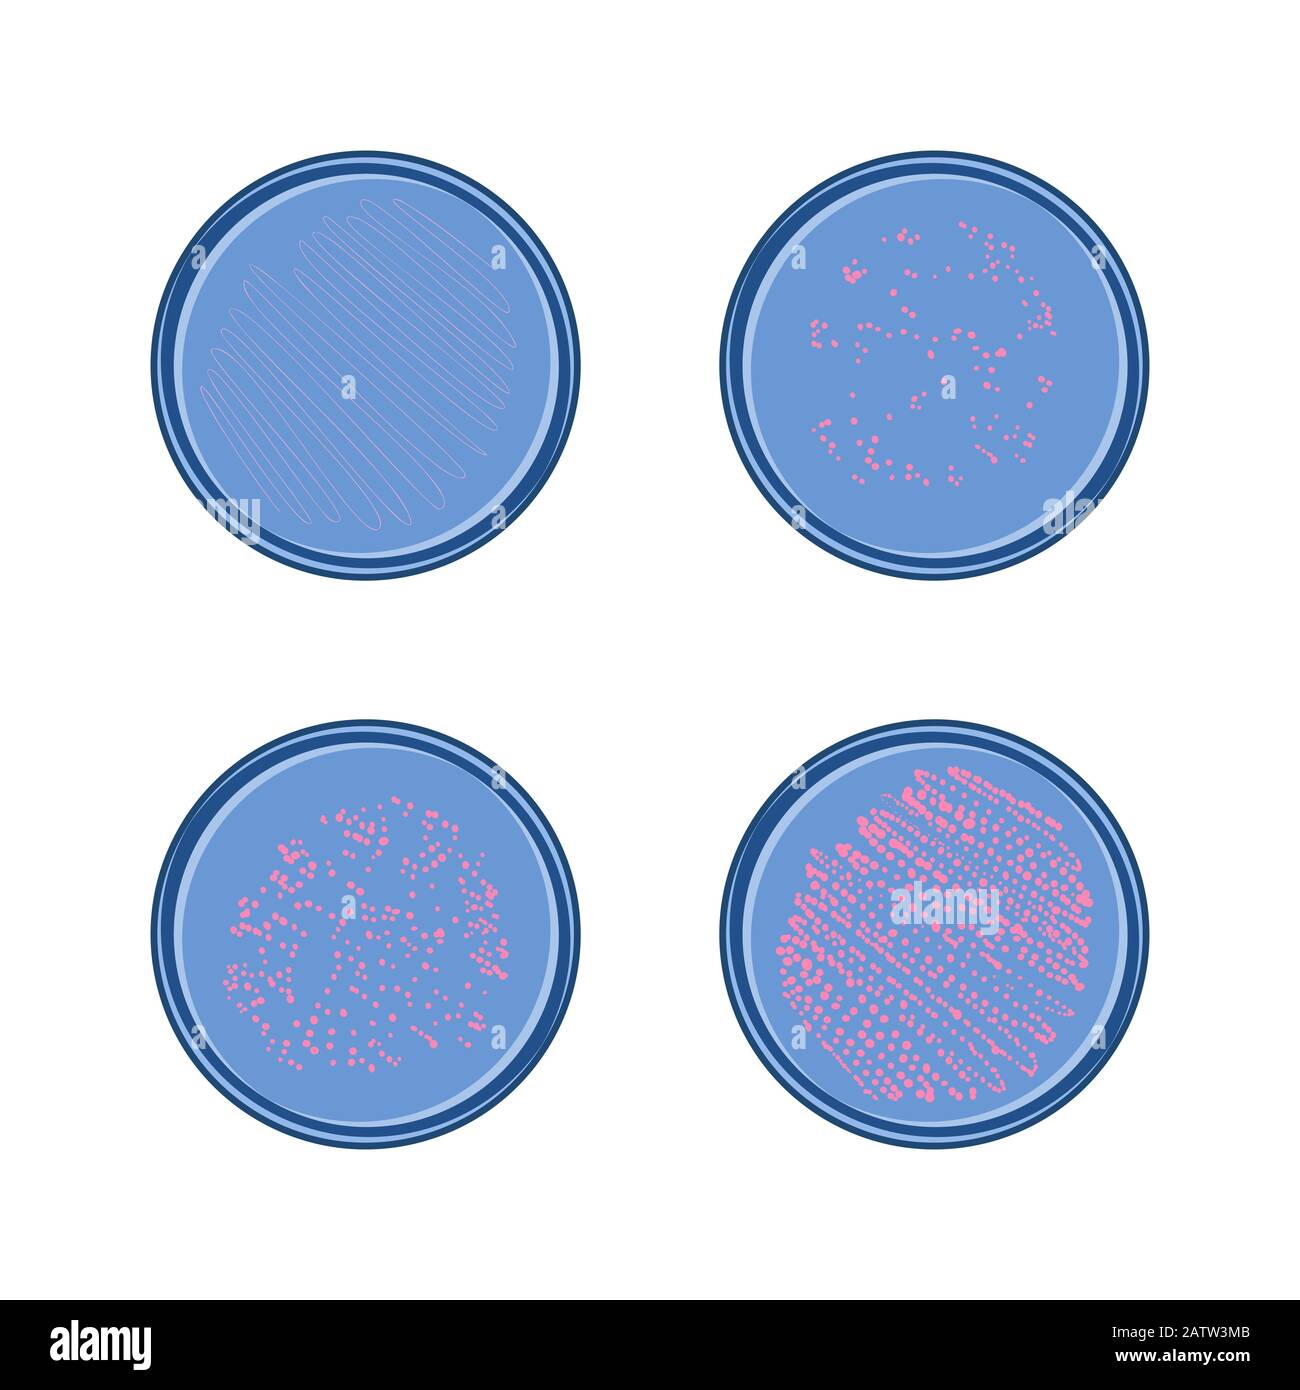 Bakterienwachstum in petry Dish, 4 Stufen der Kolonie von Mikroben, Vektor-flaches Design. Stock Vektor